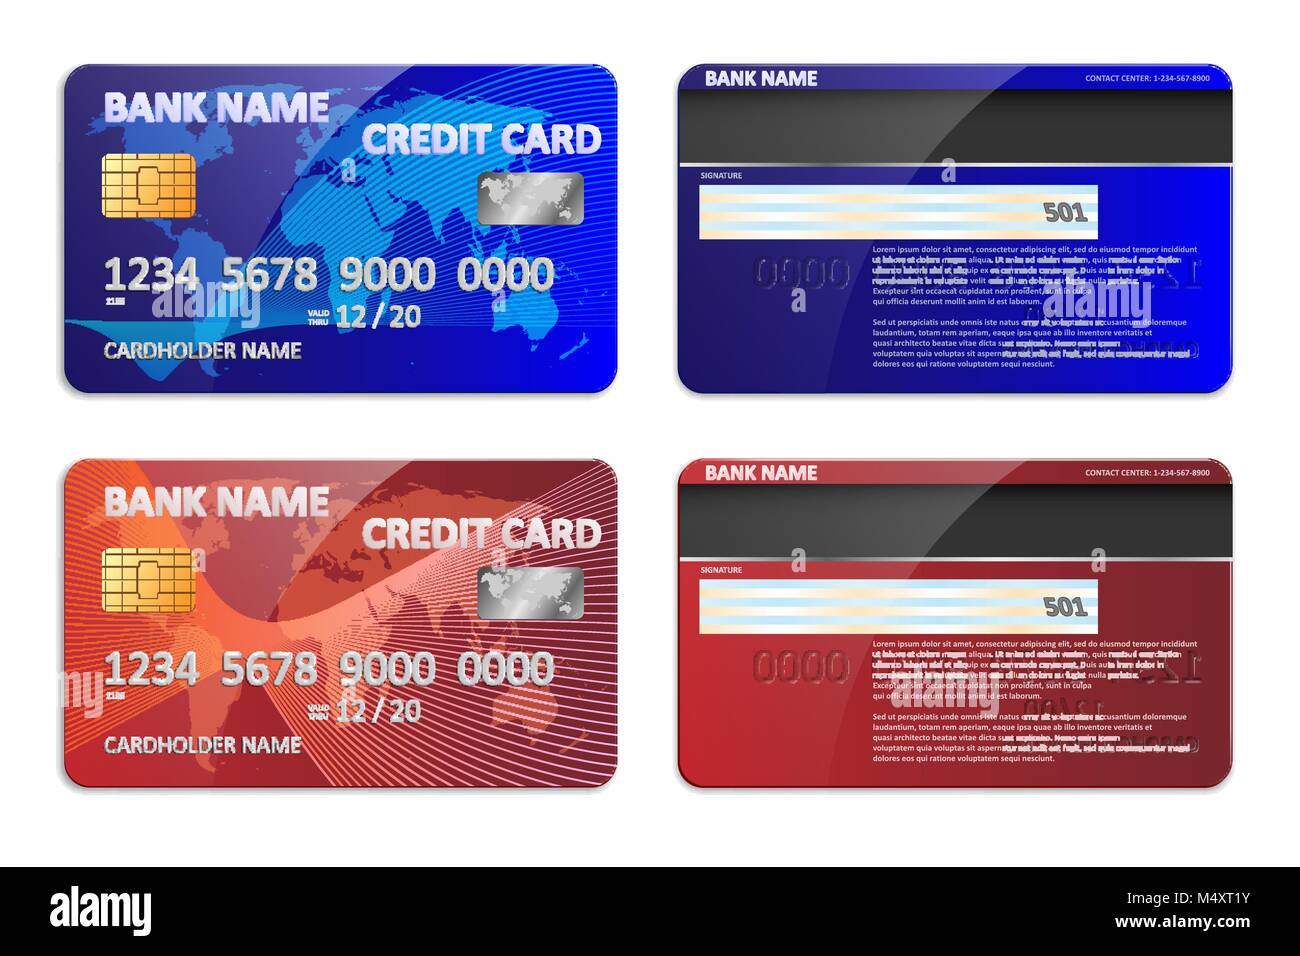 Realistico di blu e di rosso la carta di credito della banca modello  isolato. Plastica banca carta di credito mockup con colorati disegno  astratto e mappa del mondo per il settore bancario.